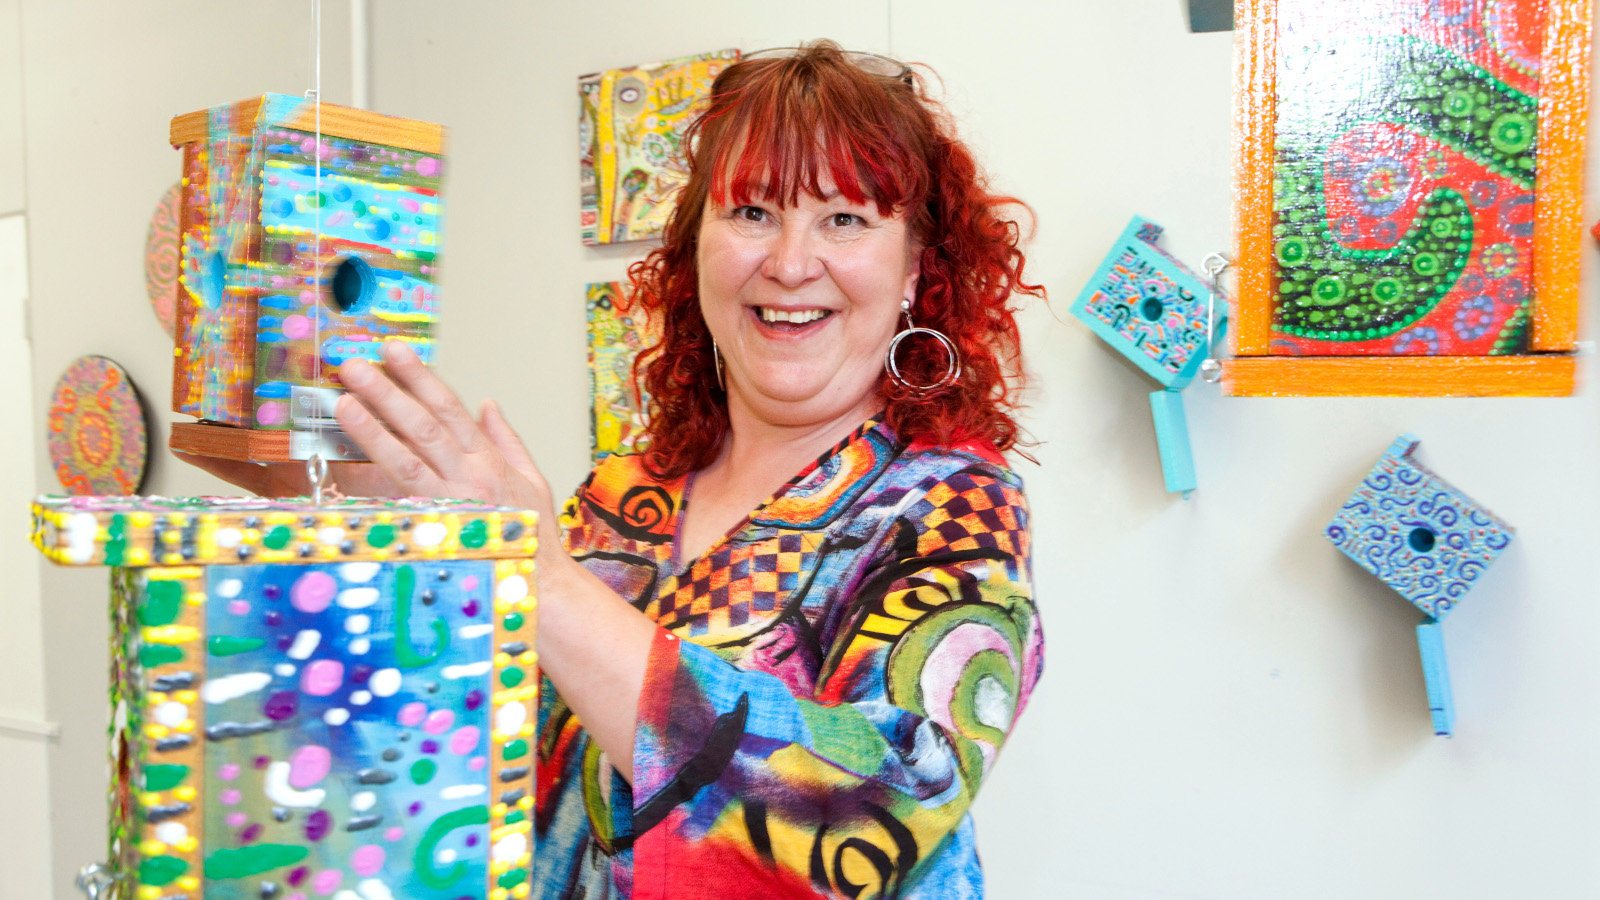 Kuvassa on Paula Huhtanen värikkäissä vaatteissa ja värikkäiden taideteostensa keskellä.